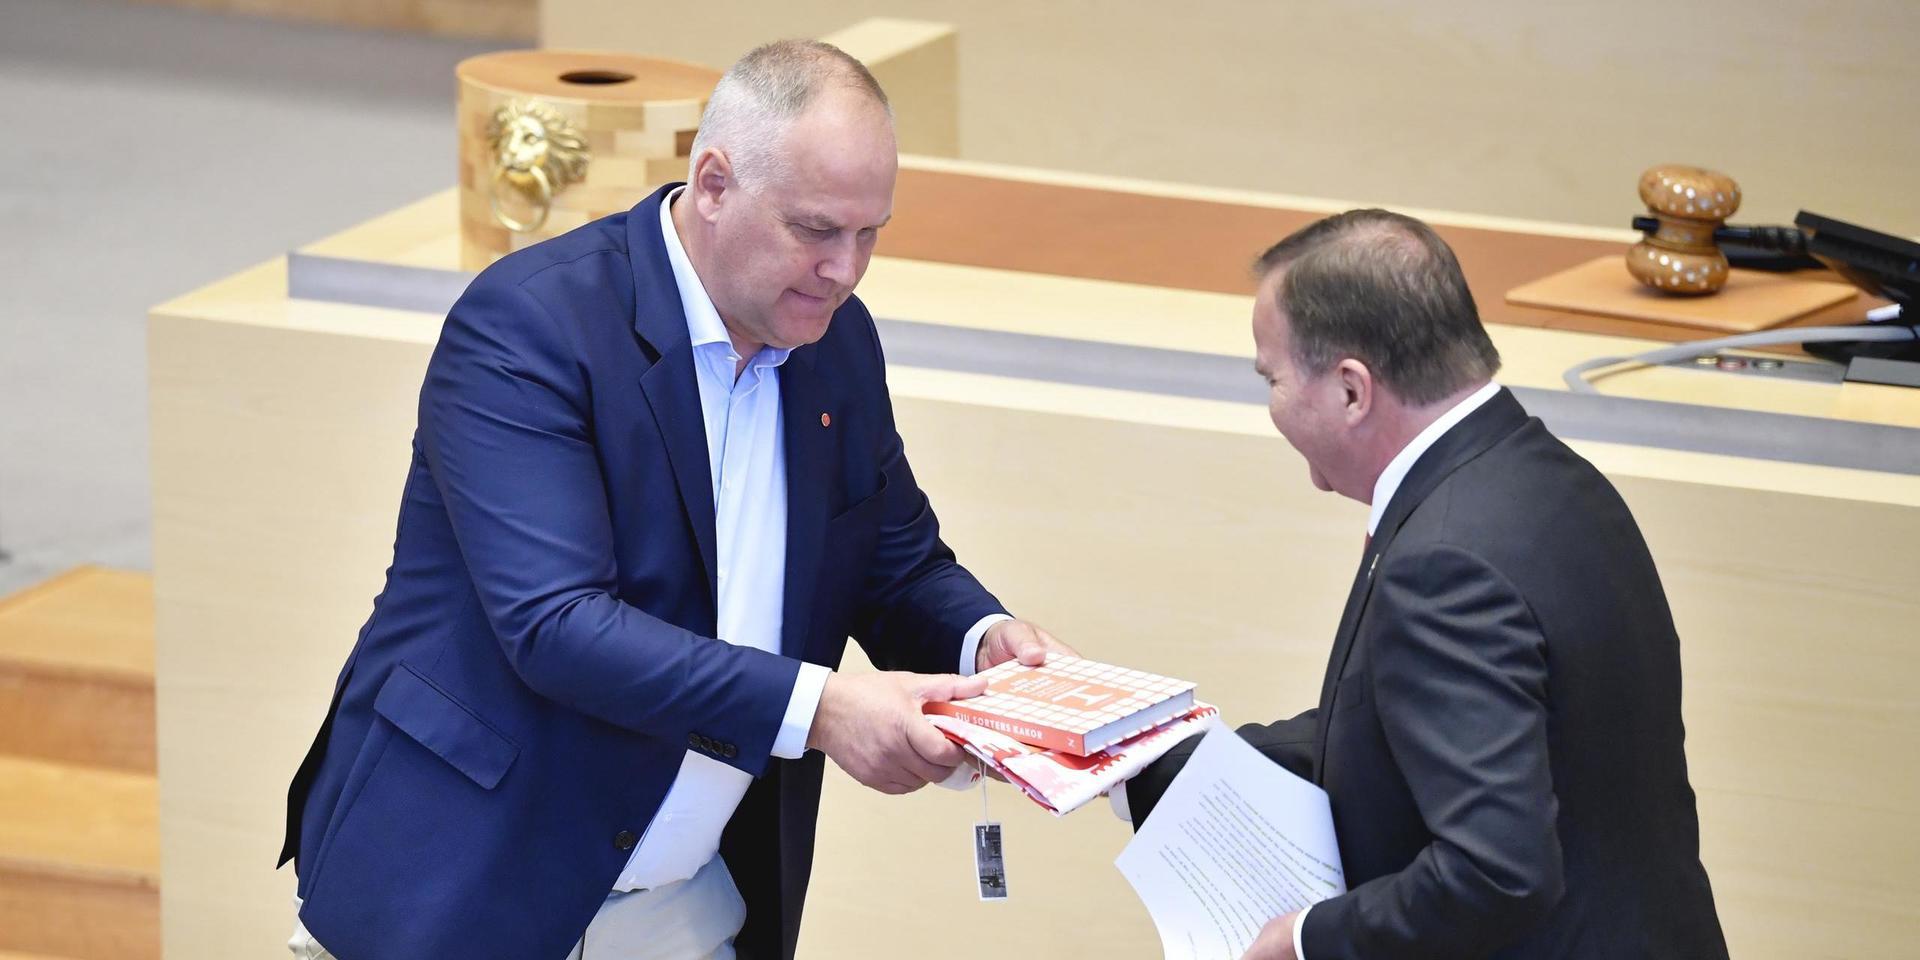 Jonas Sjöstedt partiledare Vänsterpartiet och statsministern Stefan Löfven Socialdemokraterna.